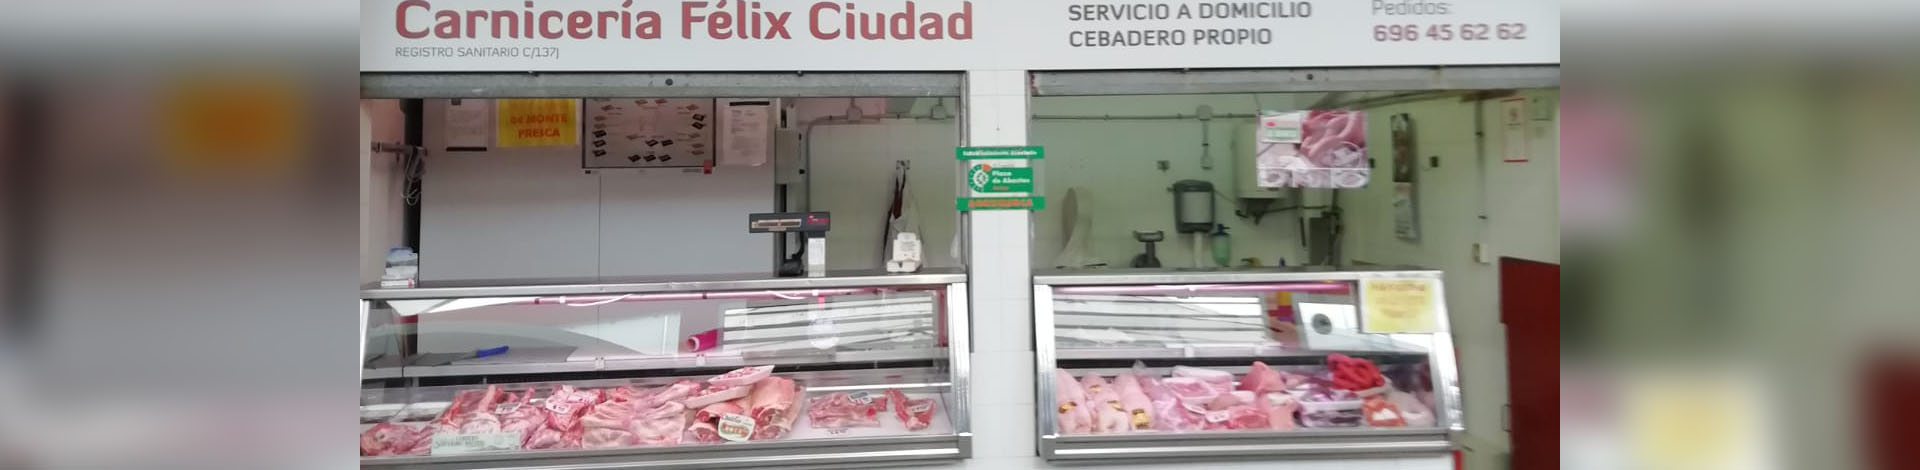 Carnicería Félix Ciudad